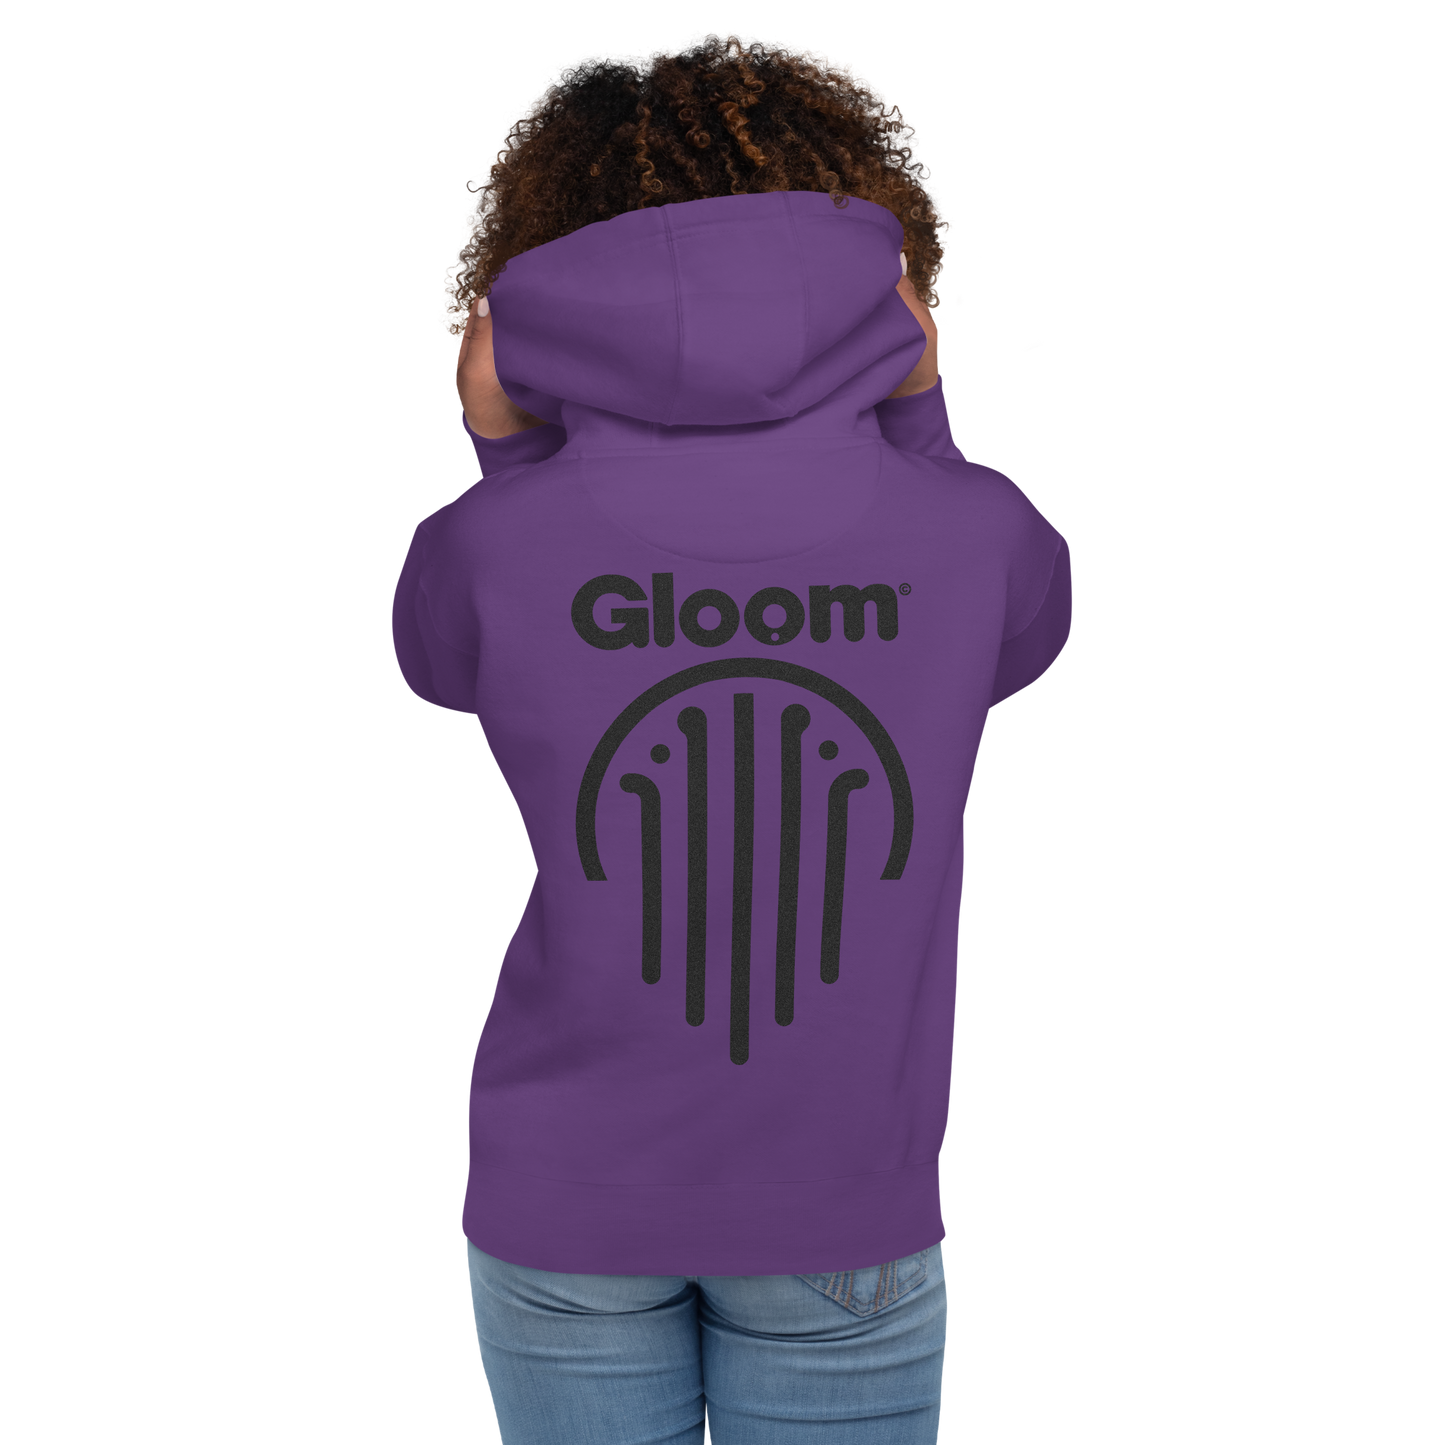 Gloom Legacy Backprint Hoodie